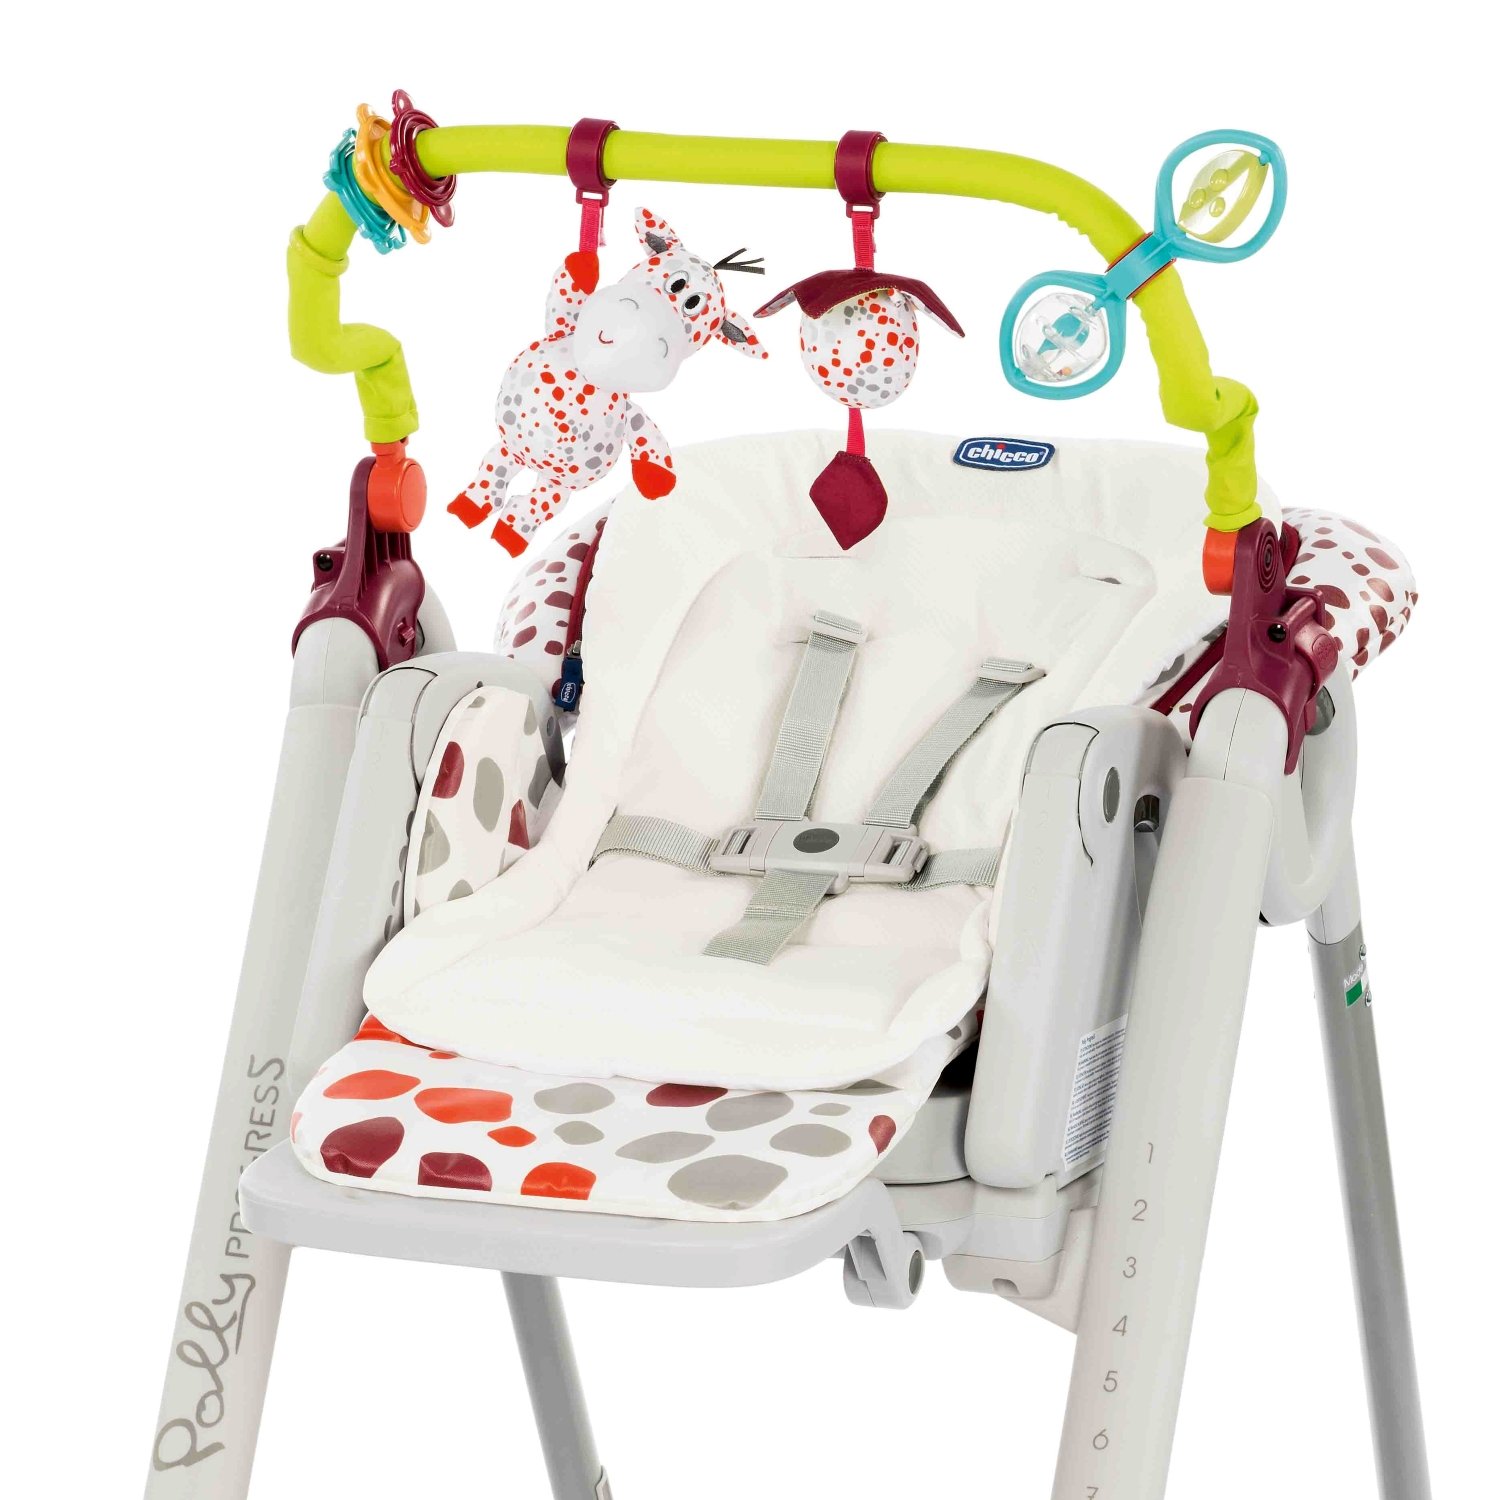 Комплект для стульчика Chicco Polly progres5 с игрушками и вкладышем